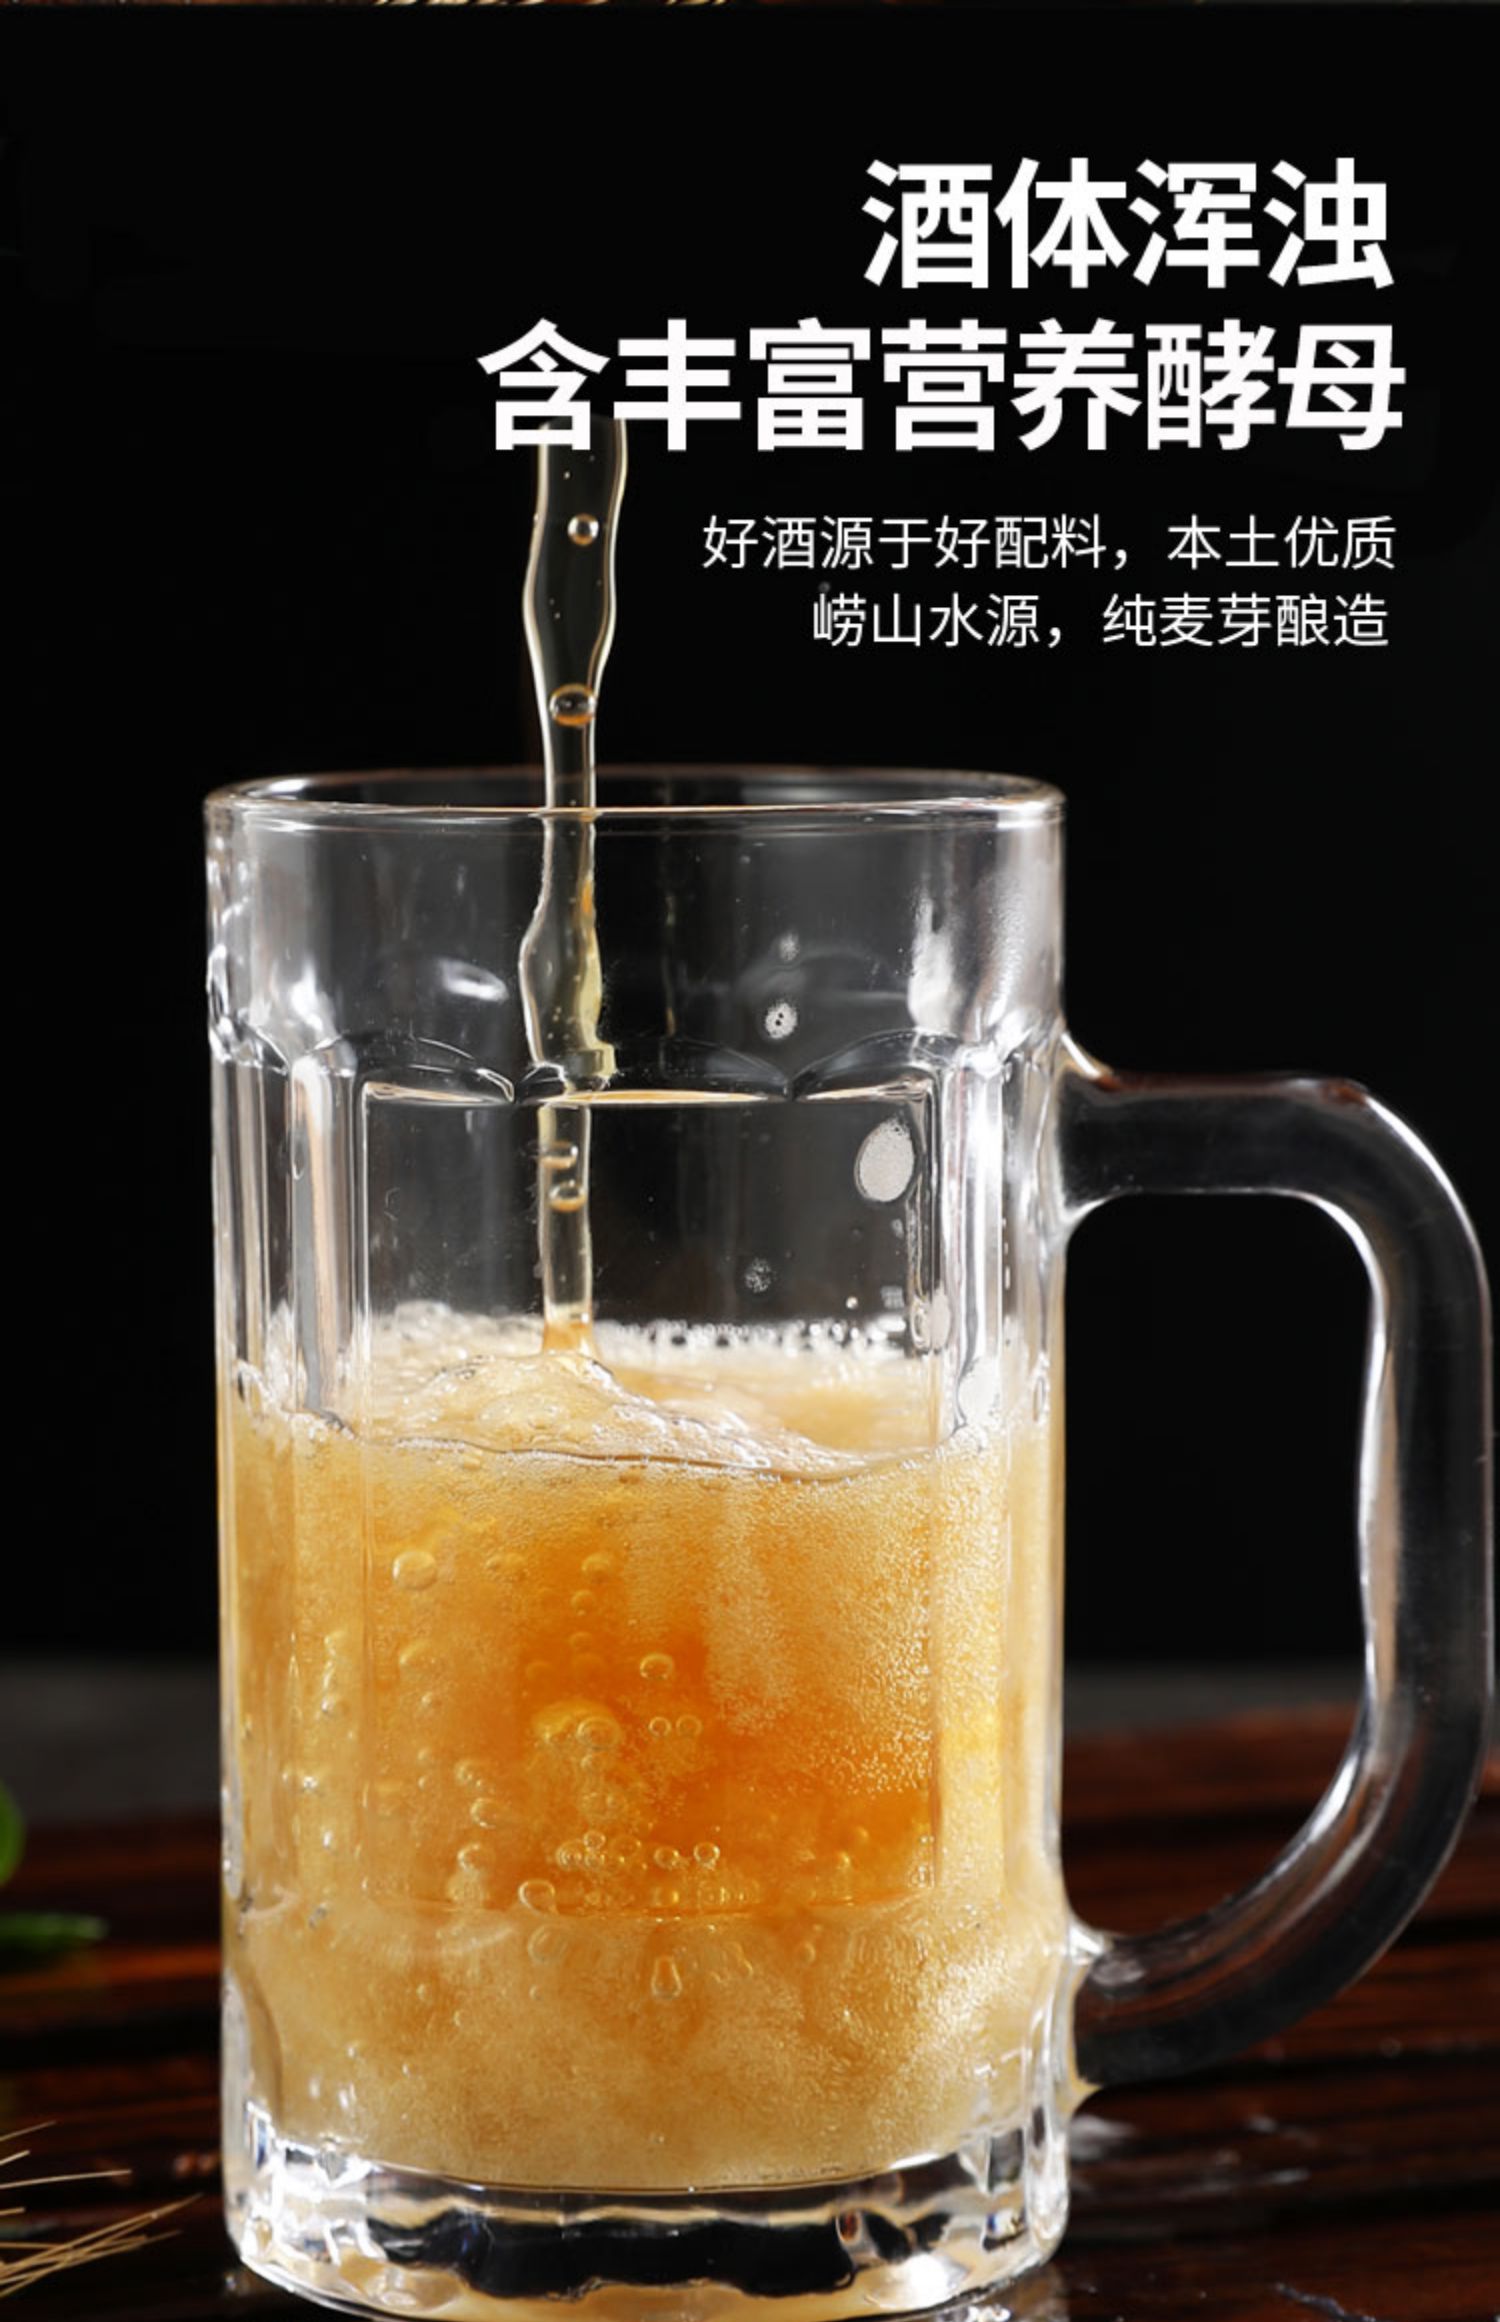 青岛特产锦特精酿原浆啤酒大麦黄啤1升2桶